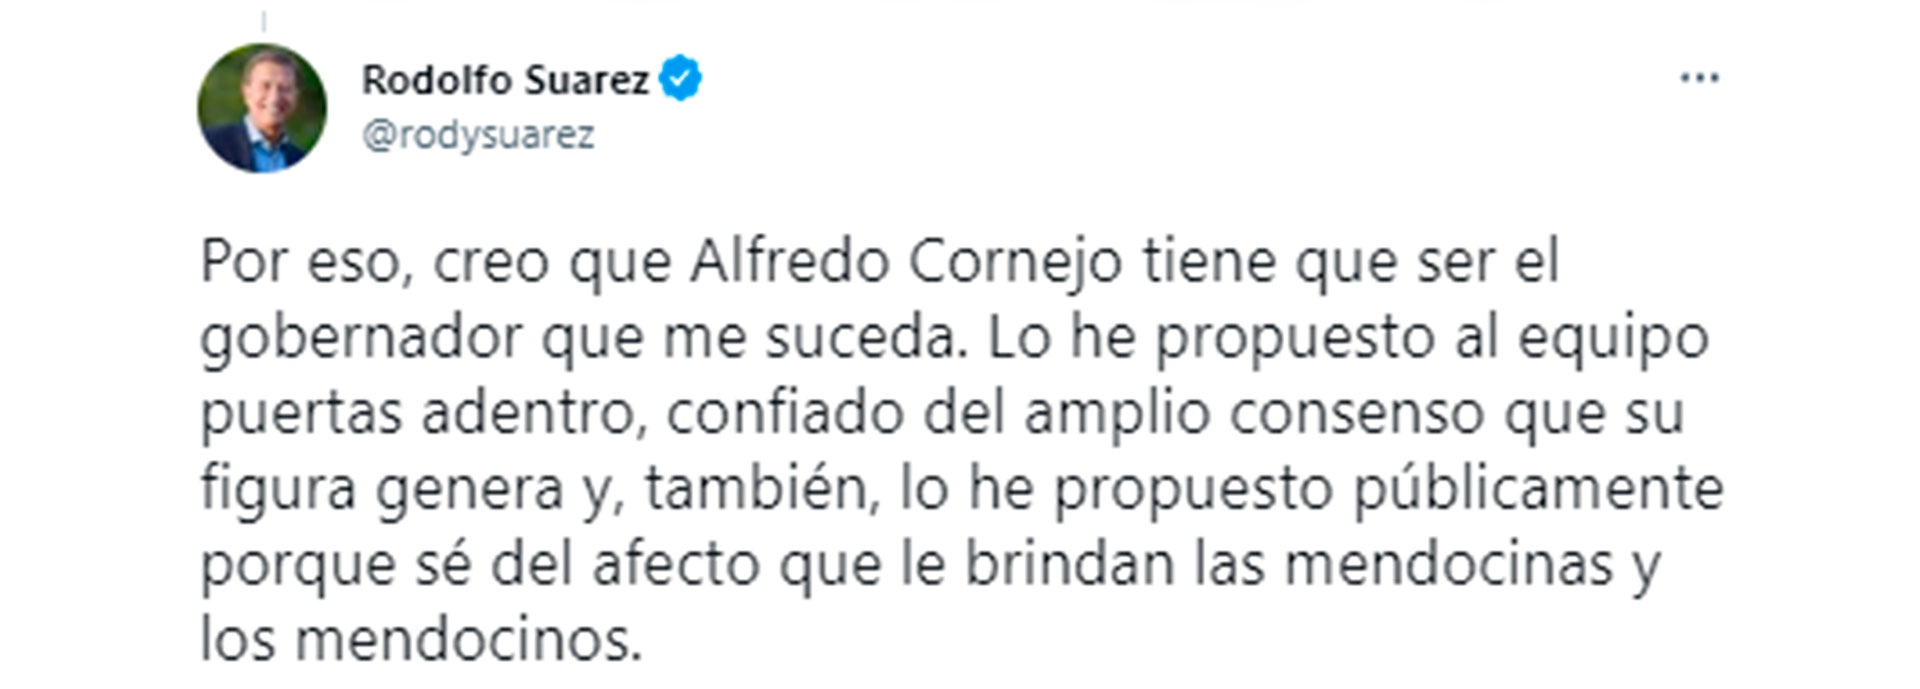 El pedido explícito del gobernador para que Cornejo lo suceda (@rodysuarez)